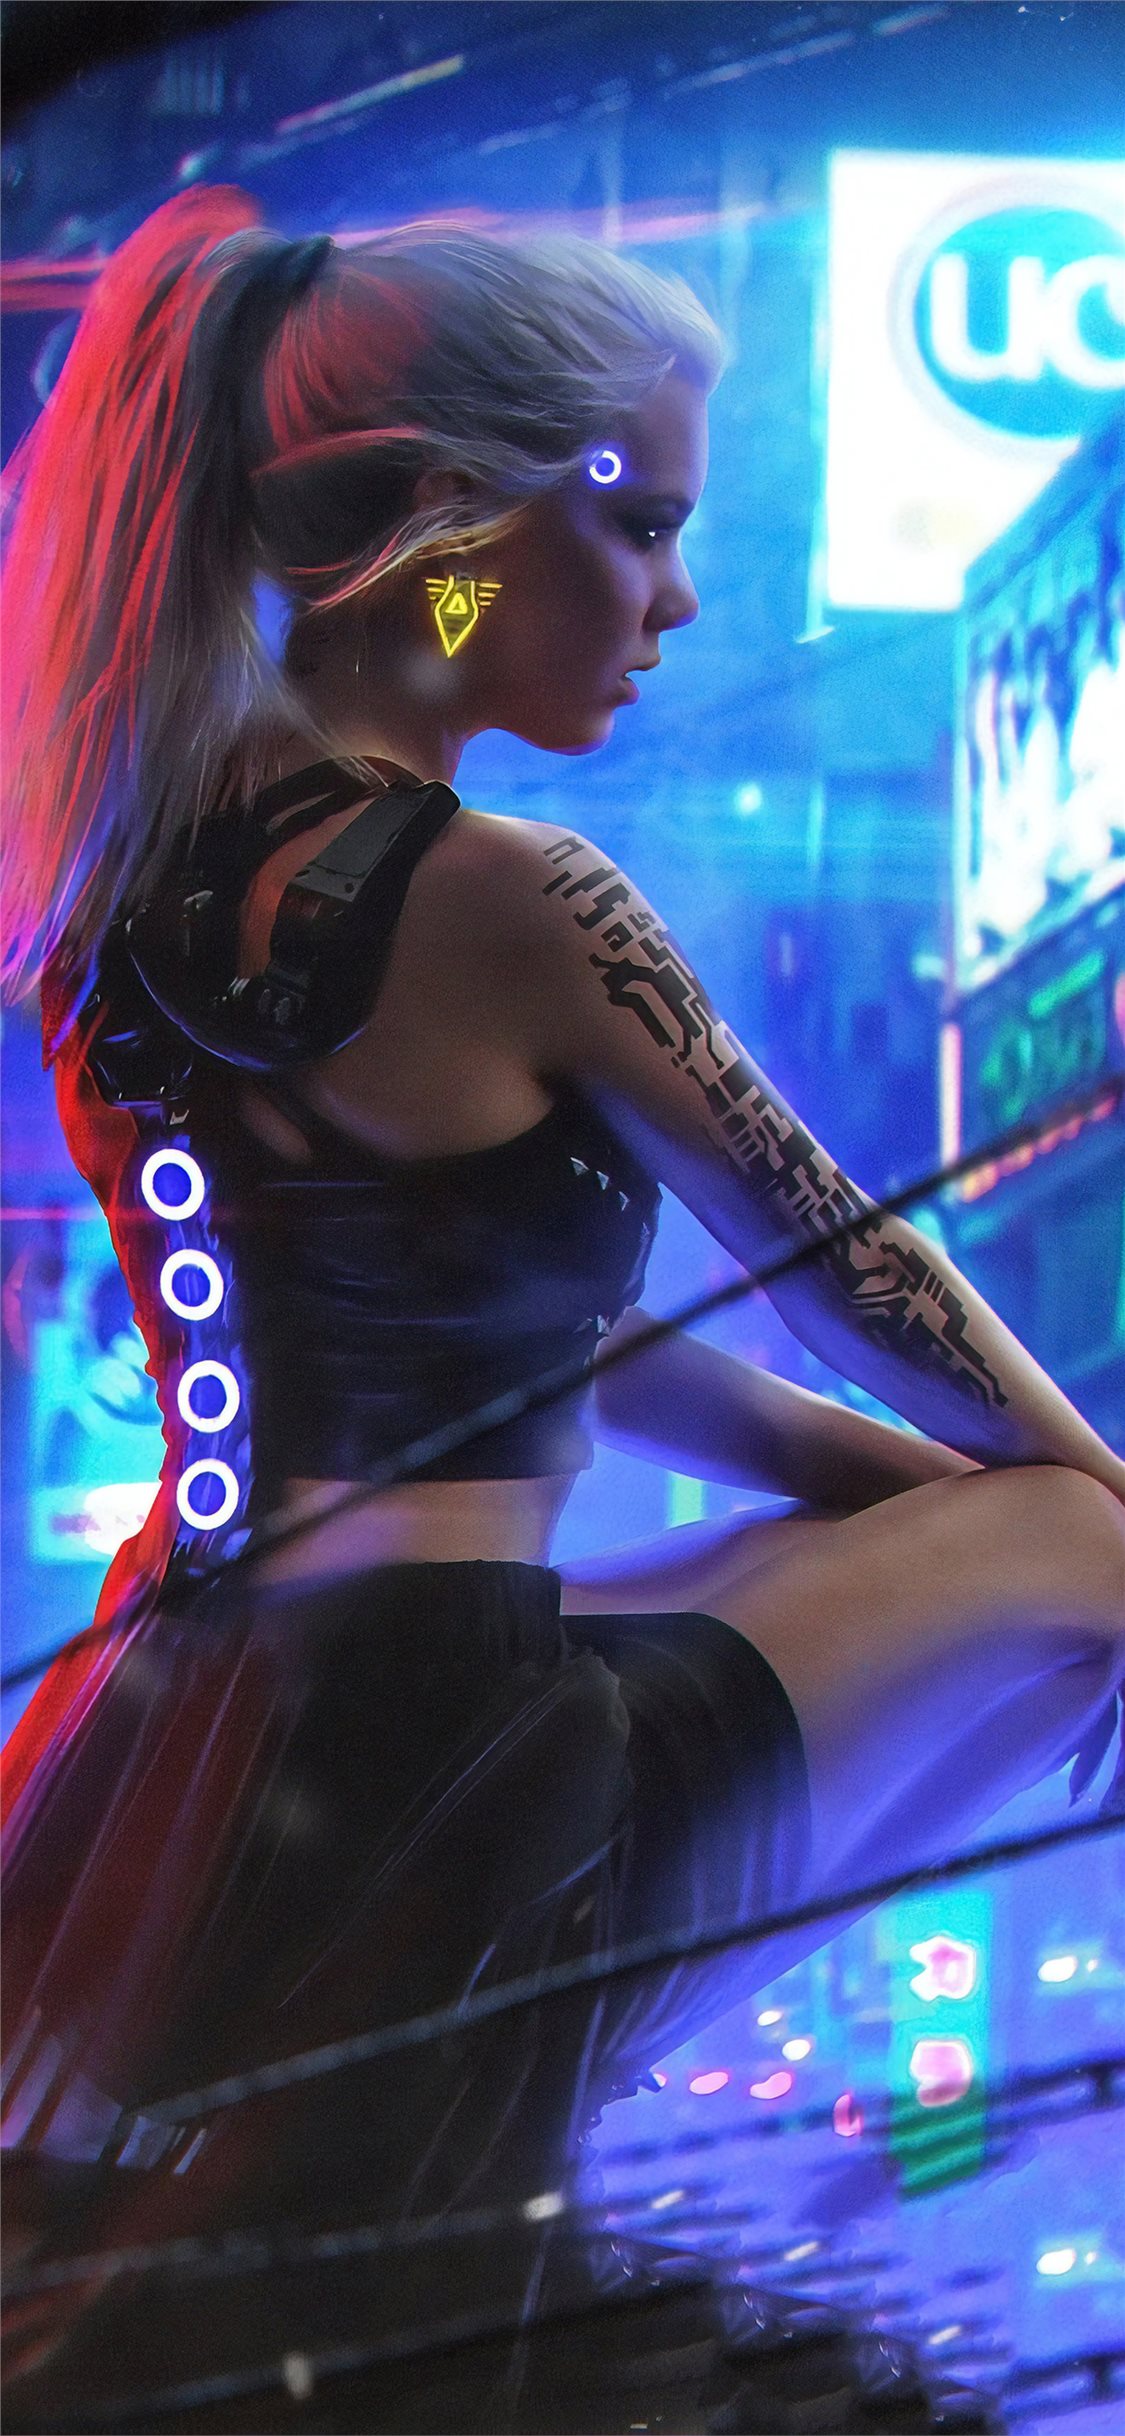 Hình nền Cyberpunk: Với phong cách độc đáo và tương lai hóa, hình nền Cyberpunk sẽ khiến bạn bị mê hoặc. Tận hưởng những tác phẩm nghệ thuật sống động, tạo cảm giác tràn đầy năng lượng cho màn hình của bạn. Hãy thưởng thức những bức ảnh độc đáo này để có những phút giây giải trí thú vị!